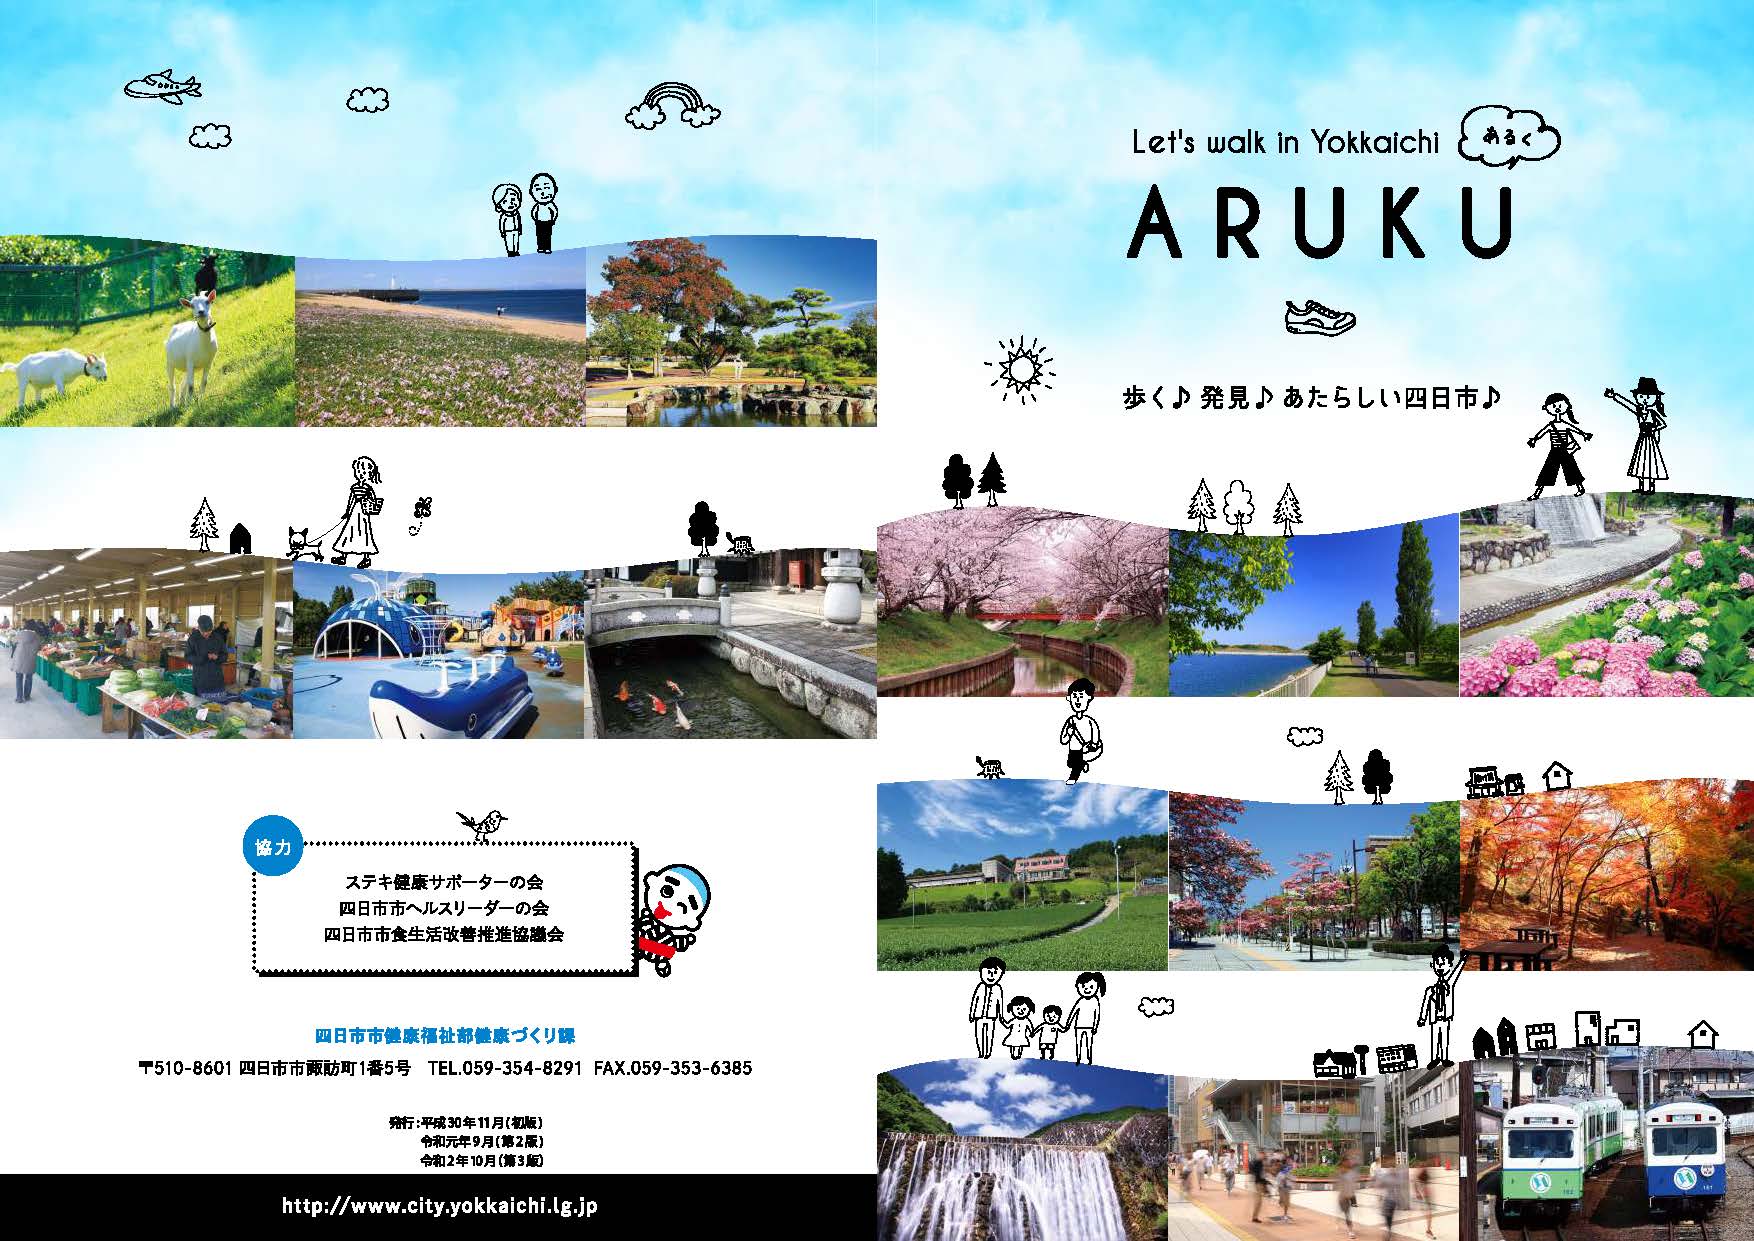 四日市を楽しく歩いて健康づくりするための健康情報冊子「ARUKU」